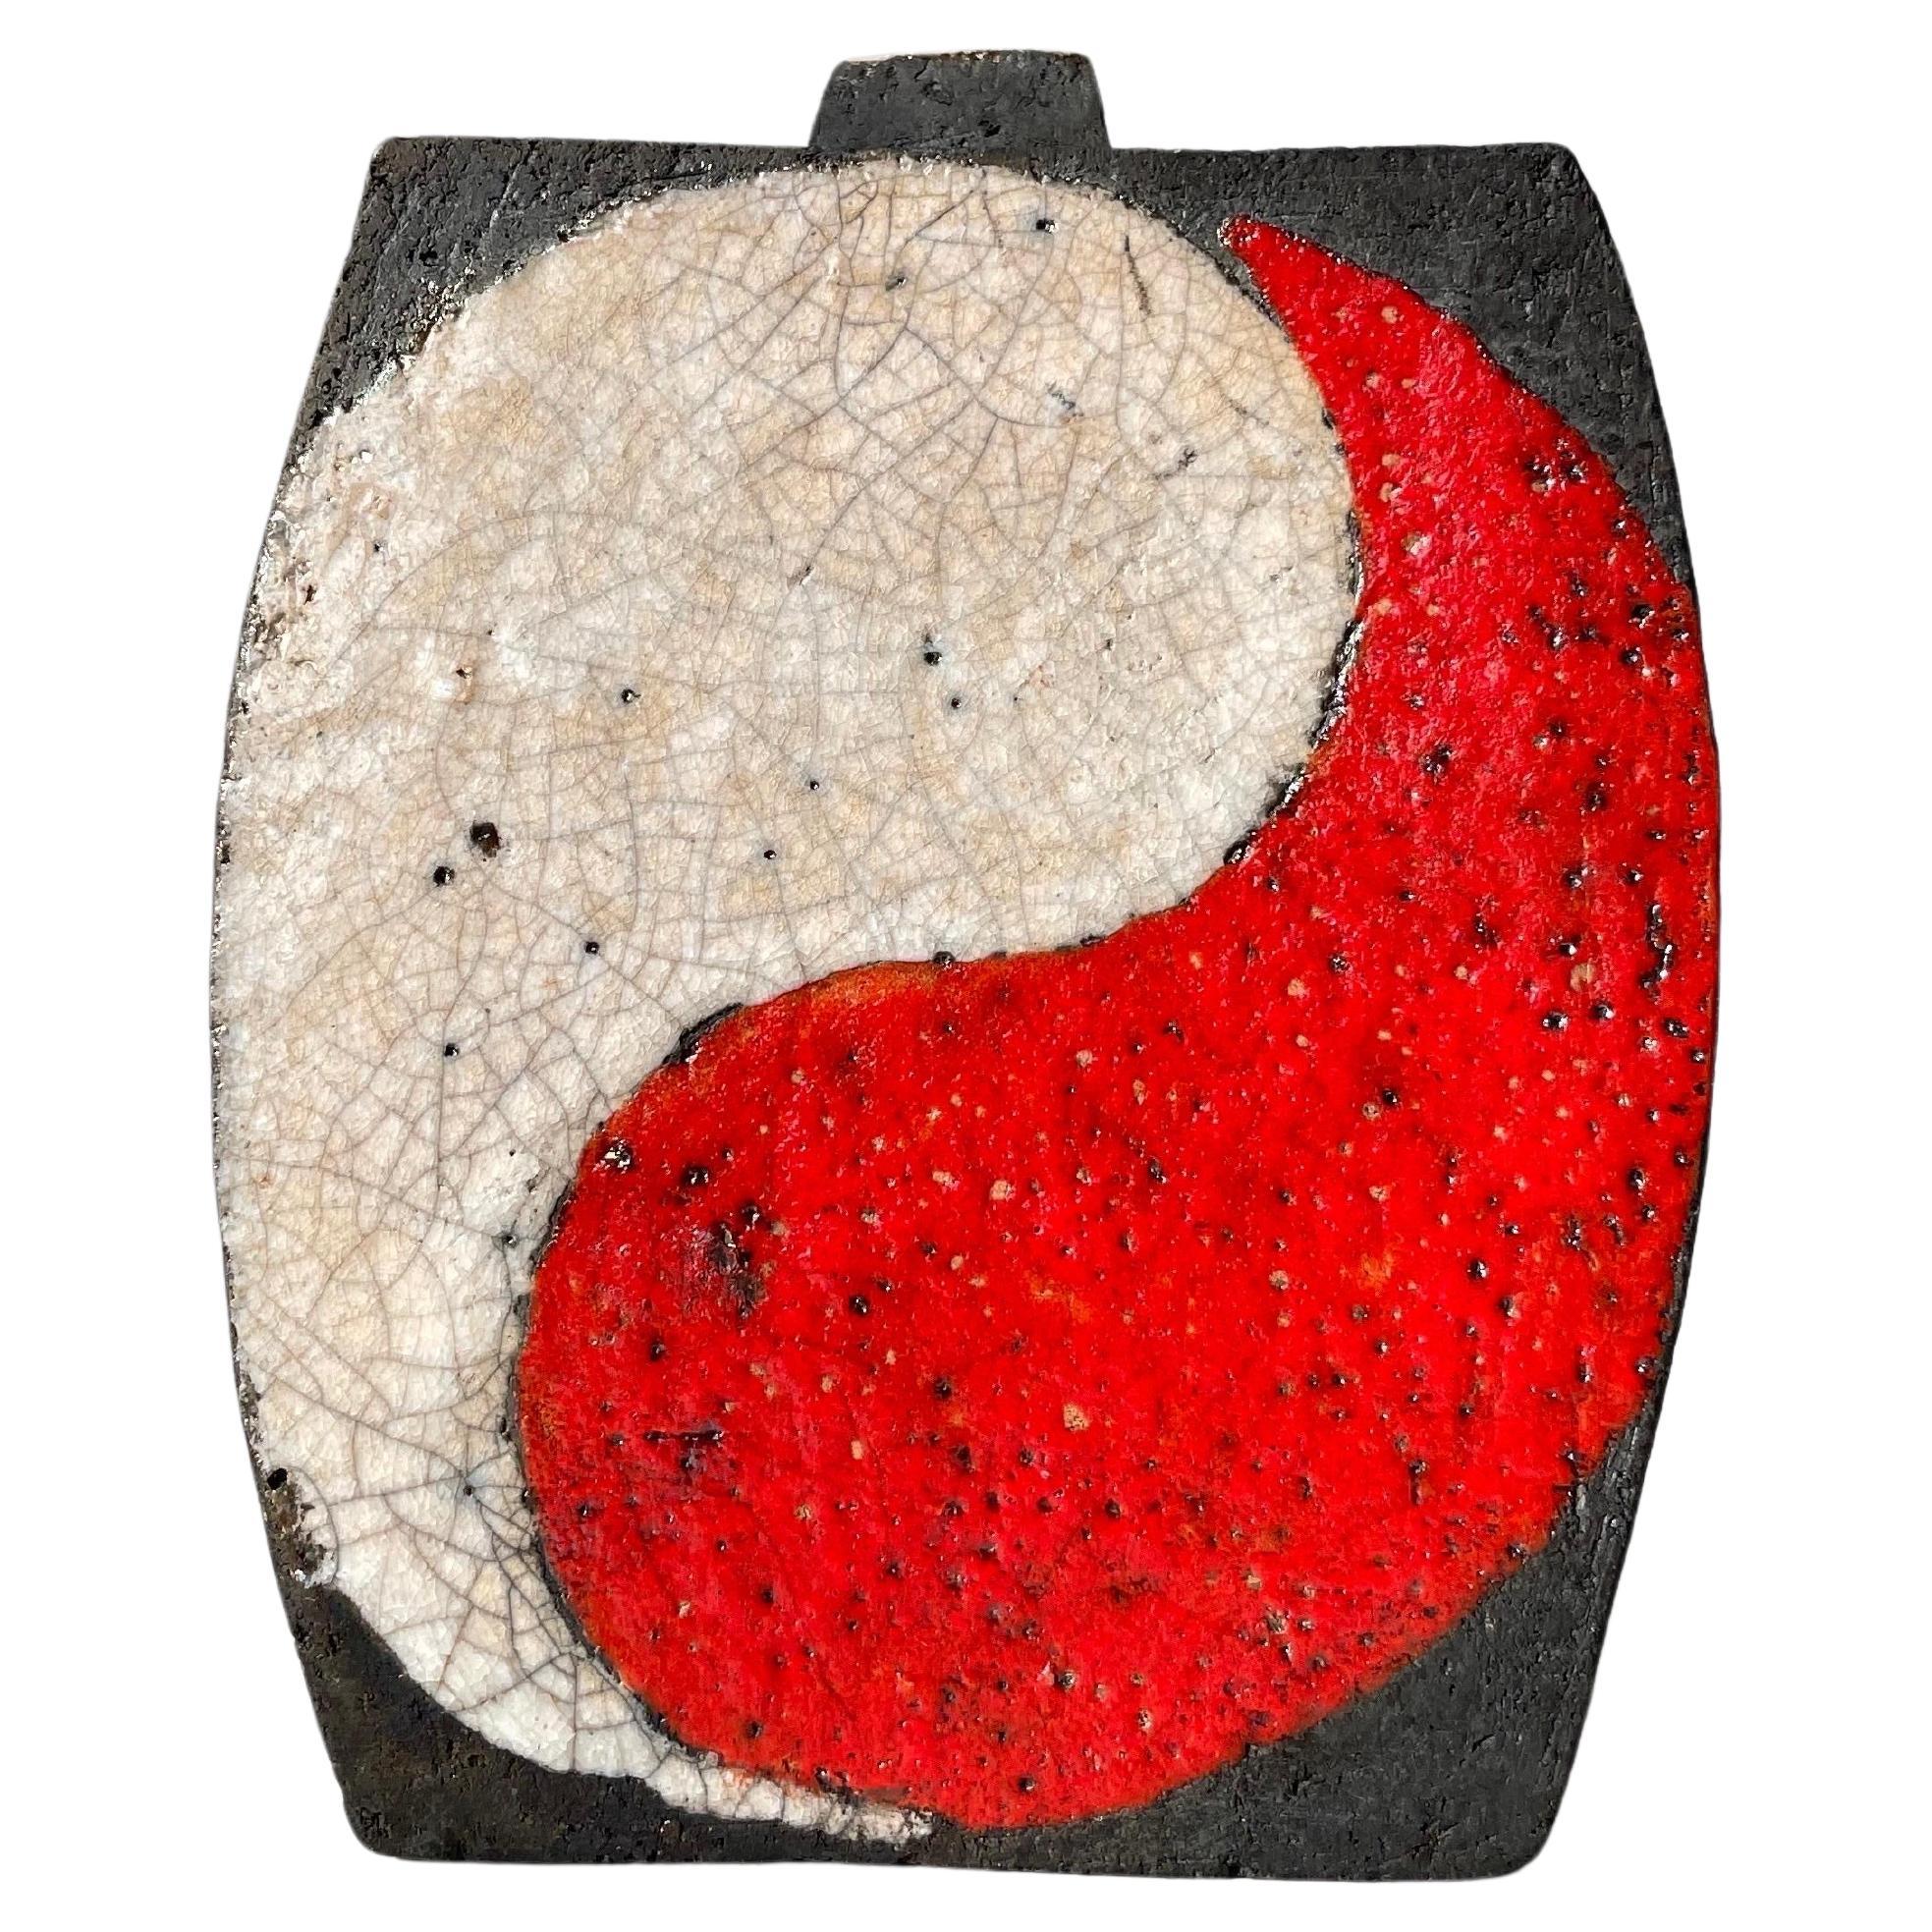 Raku-Vase im japanischen Stil in Rot, Weiß und Schwarz